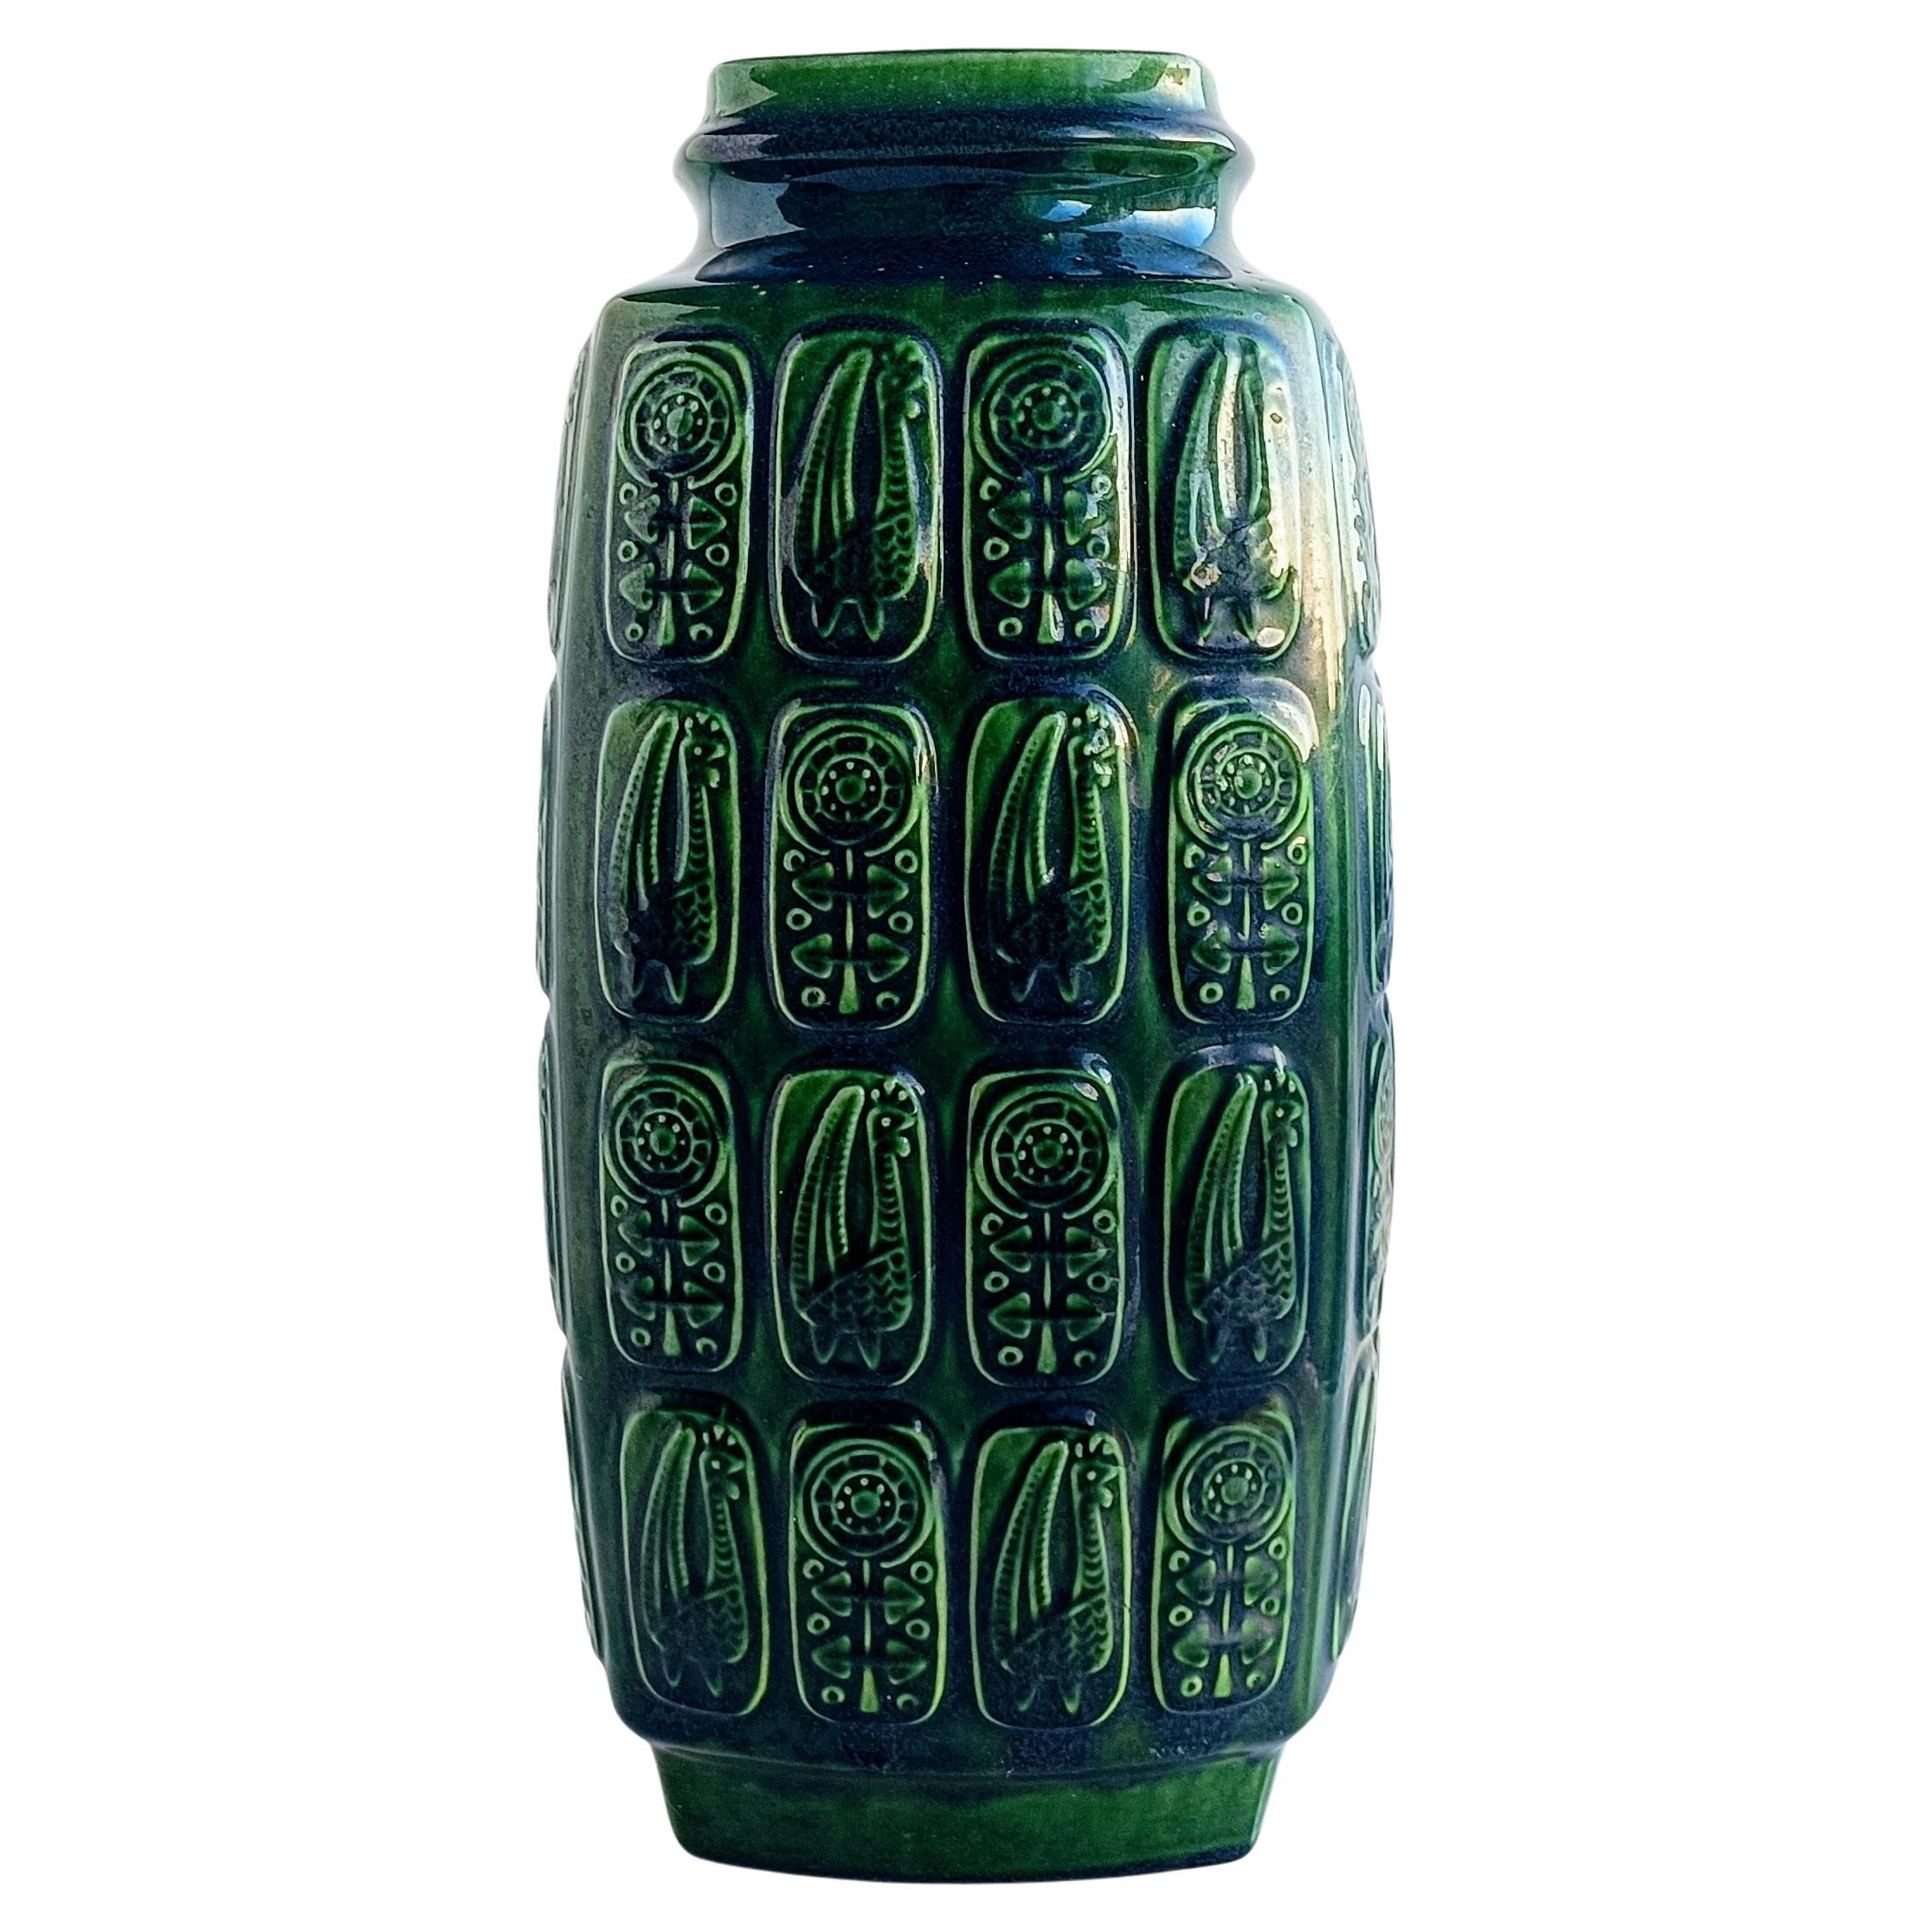 Magnifique vase de sol en poterie d'Allemagne de l'Ouest de très grande taille créé par le designer Bodo Mans et représentant le motif de l'arbre.  Très rare ¨Pharaon Decor¨ dans une glaçure de couleur forêt verte. Fabriqué à la main en Allemagne de